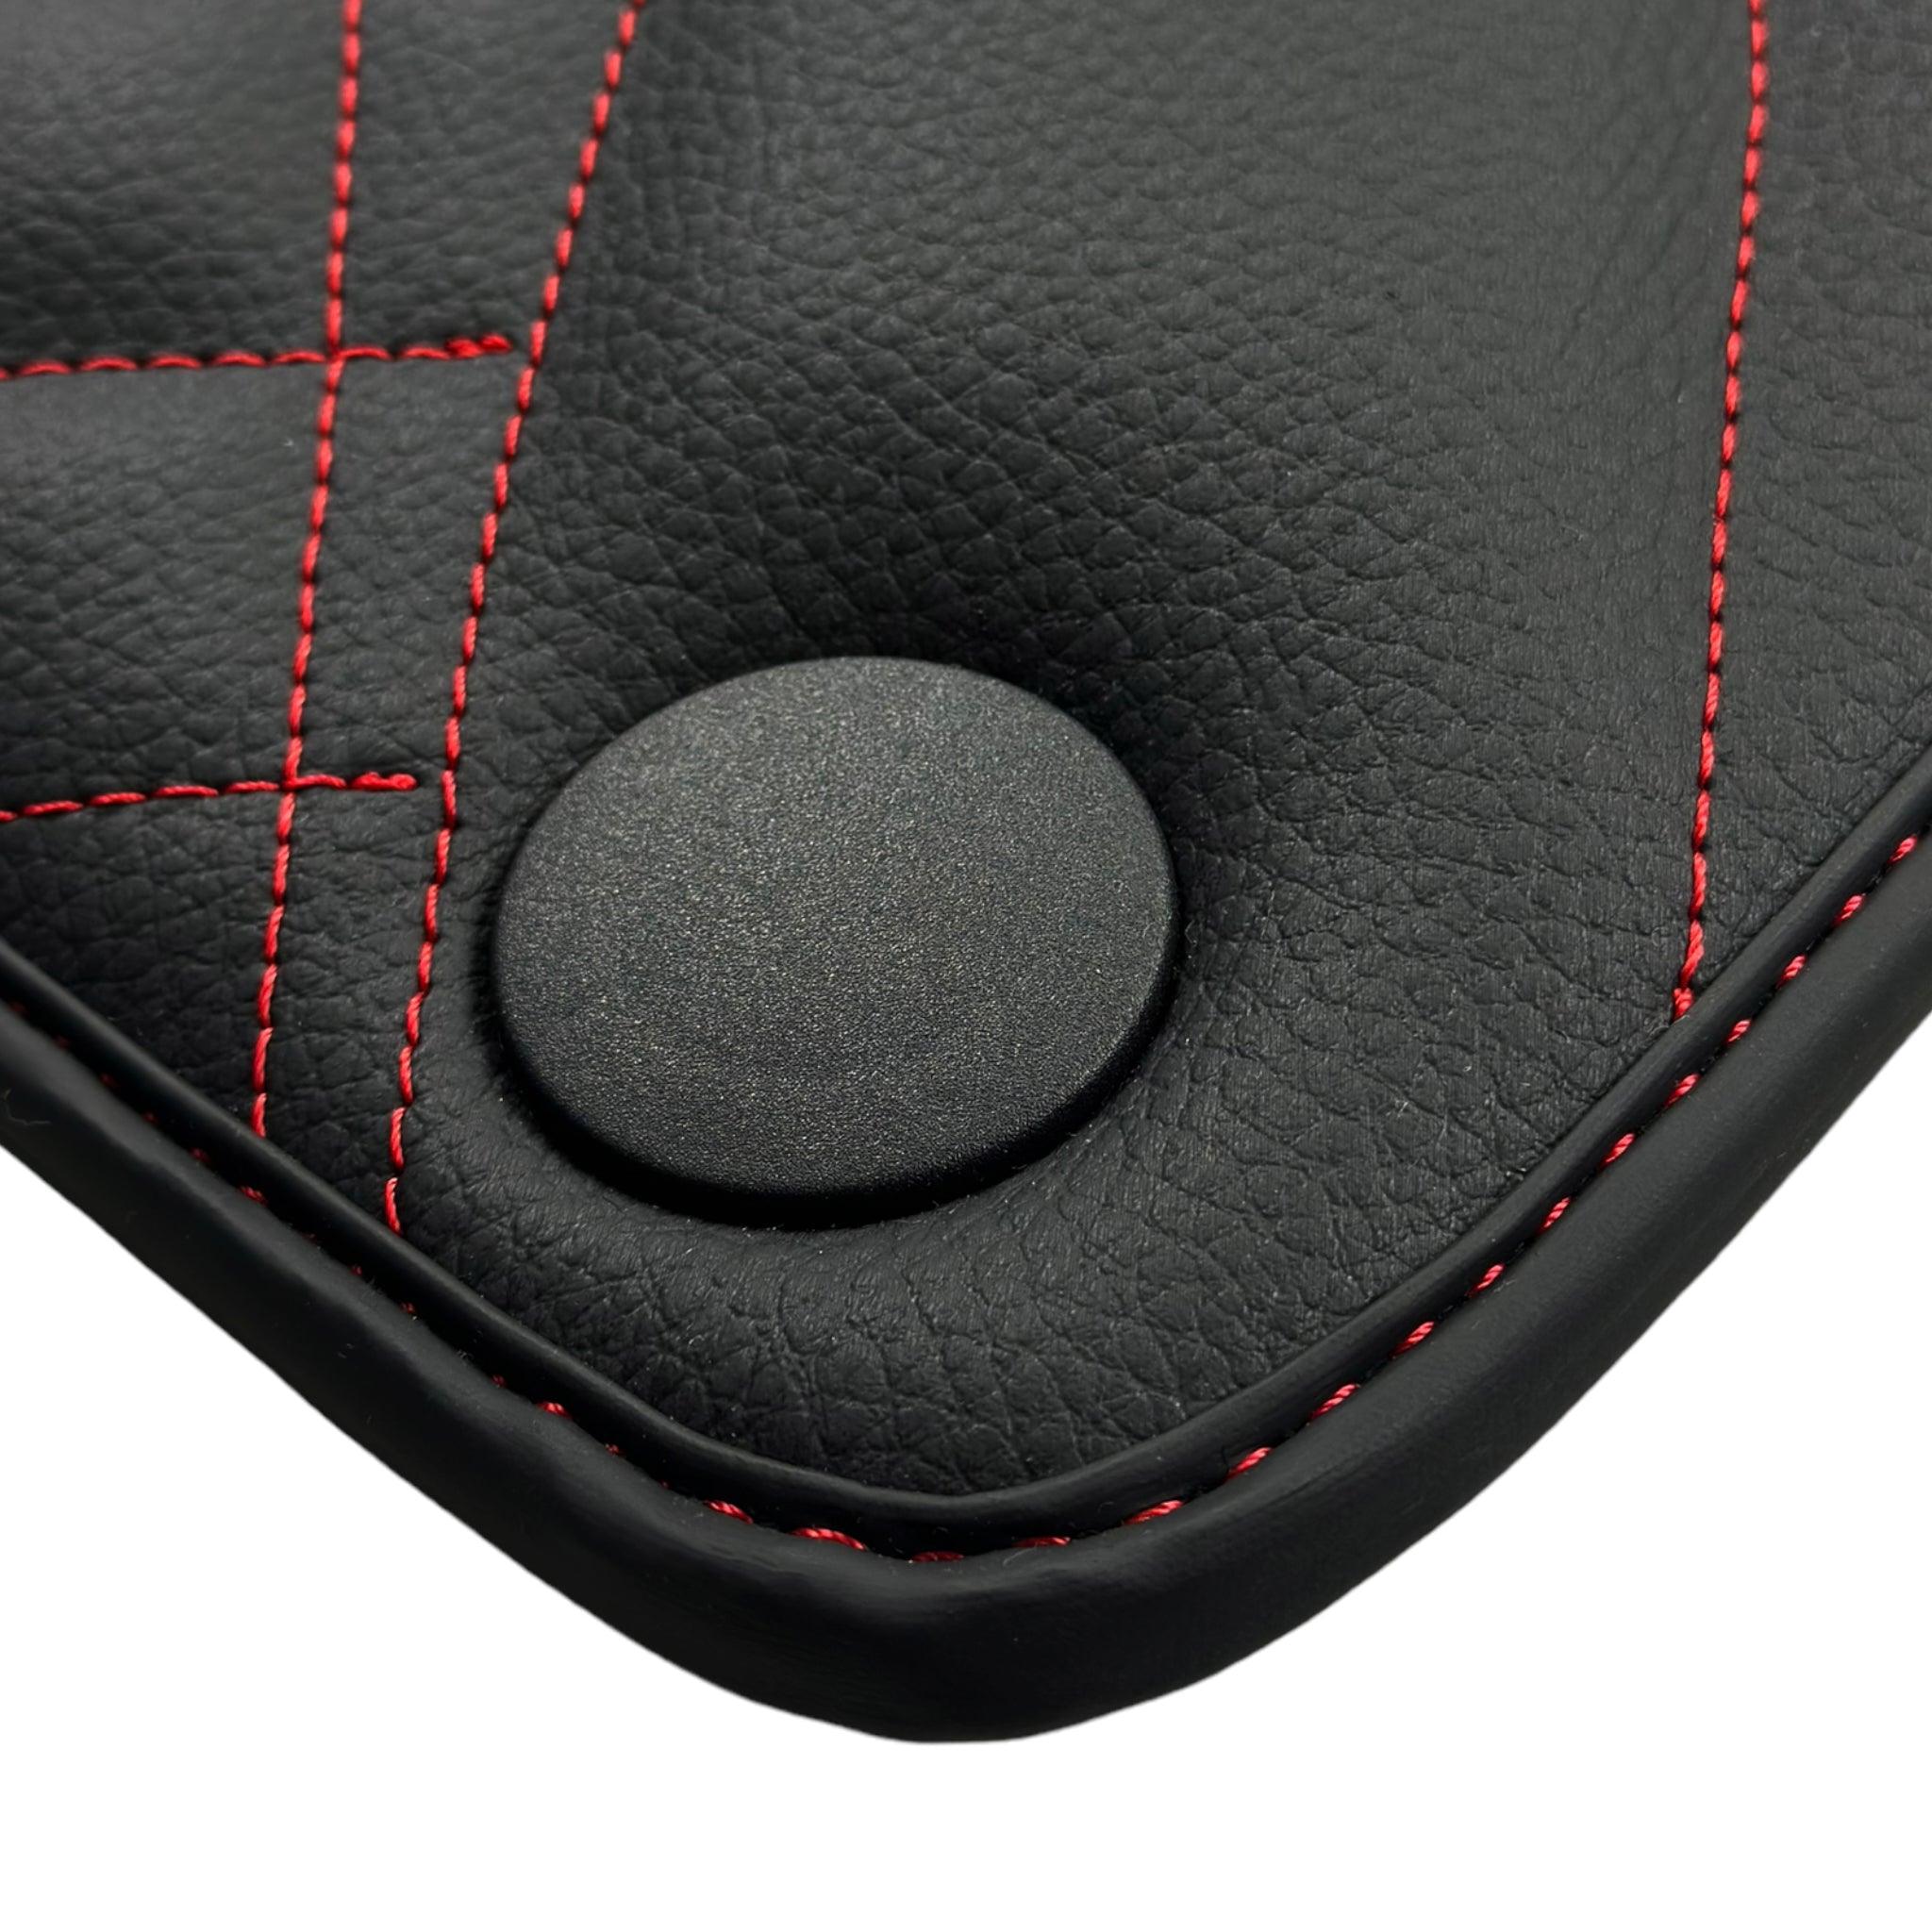 Black Leather Floor Mats For Mercedes Benz GL-Class X166 (2012-2015) | ER56 Design